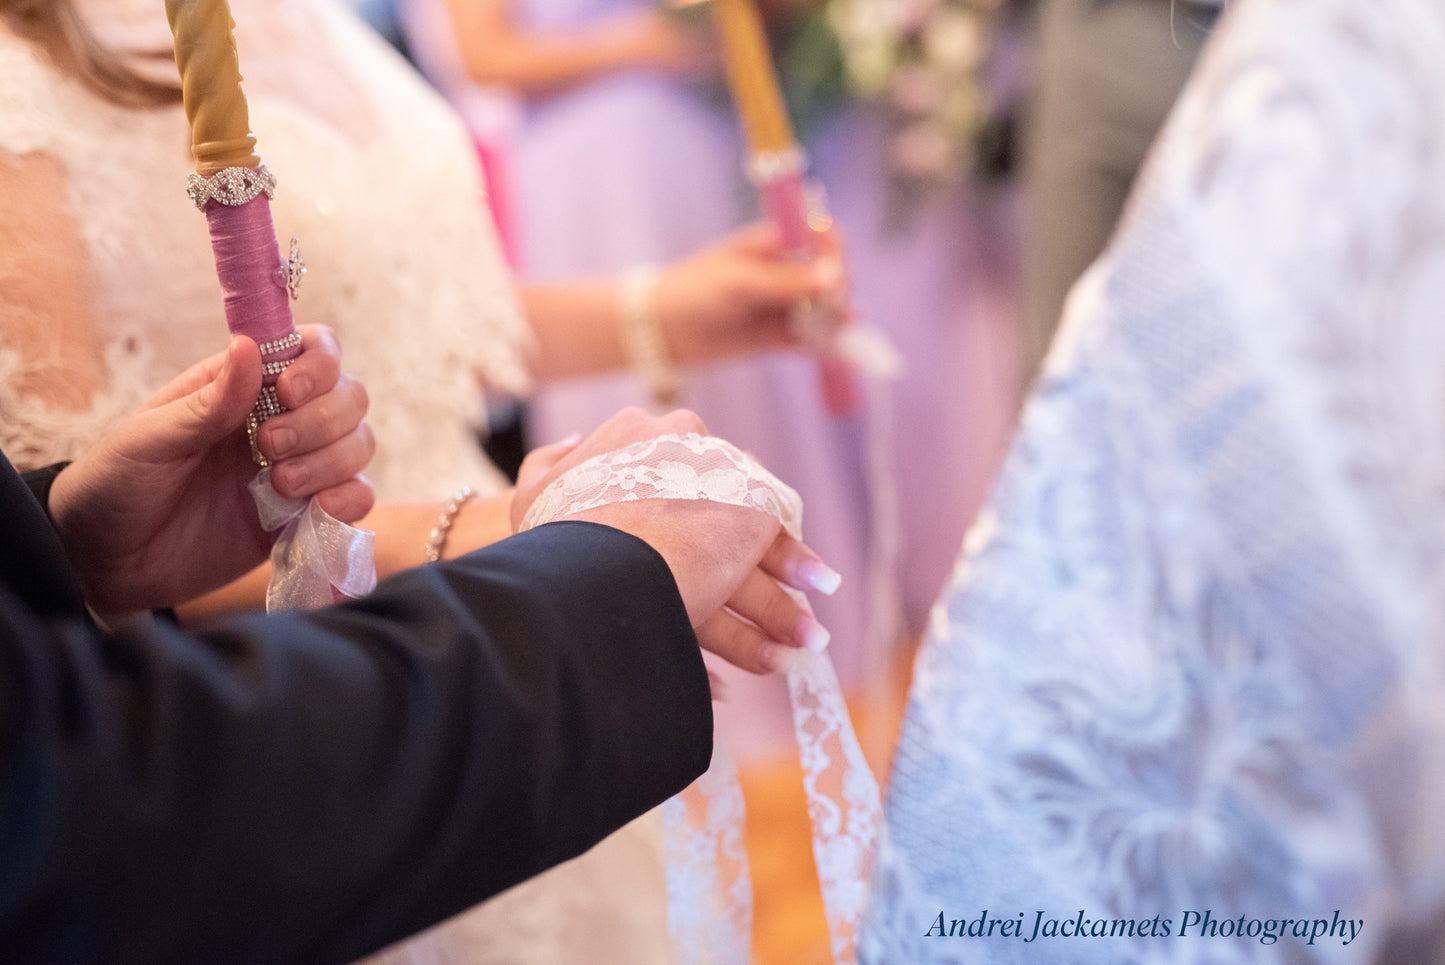 Королевская свадебная коллекция в фиолетовом цвете — набор из двух штук (17 дюймов)